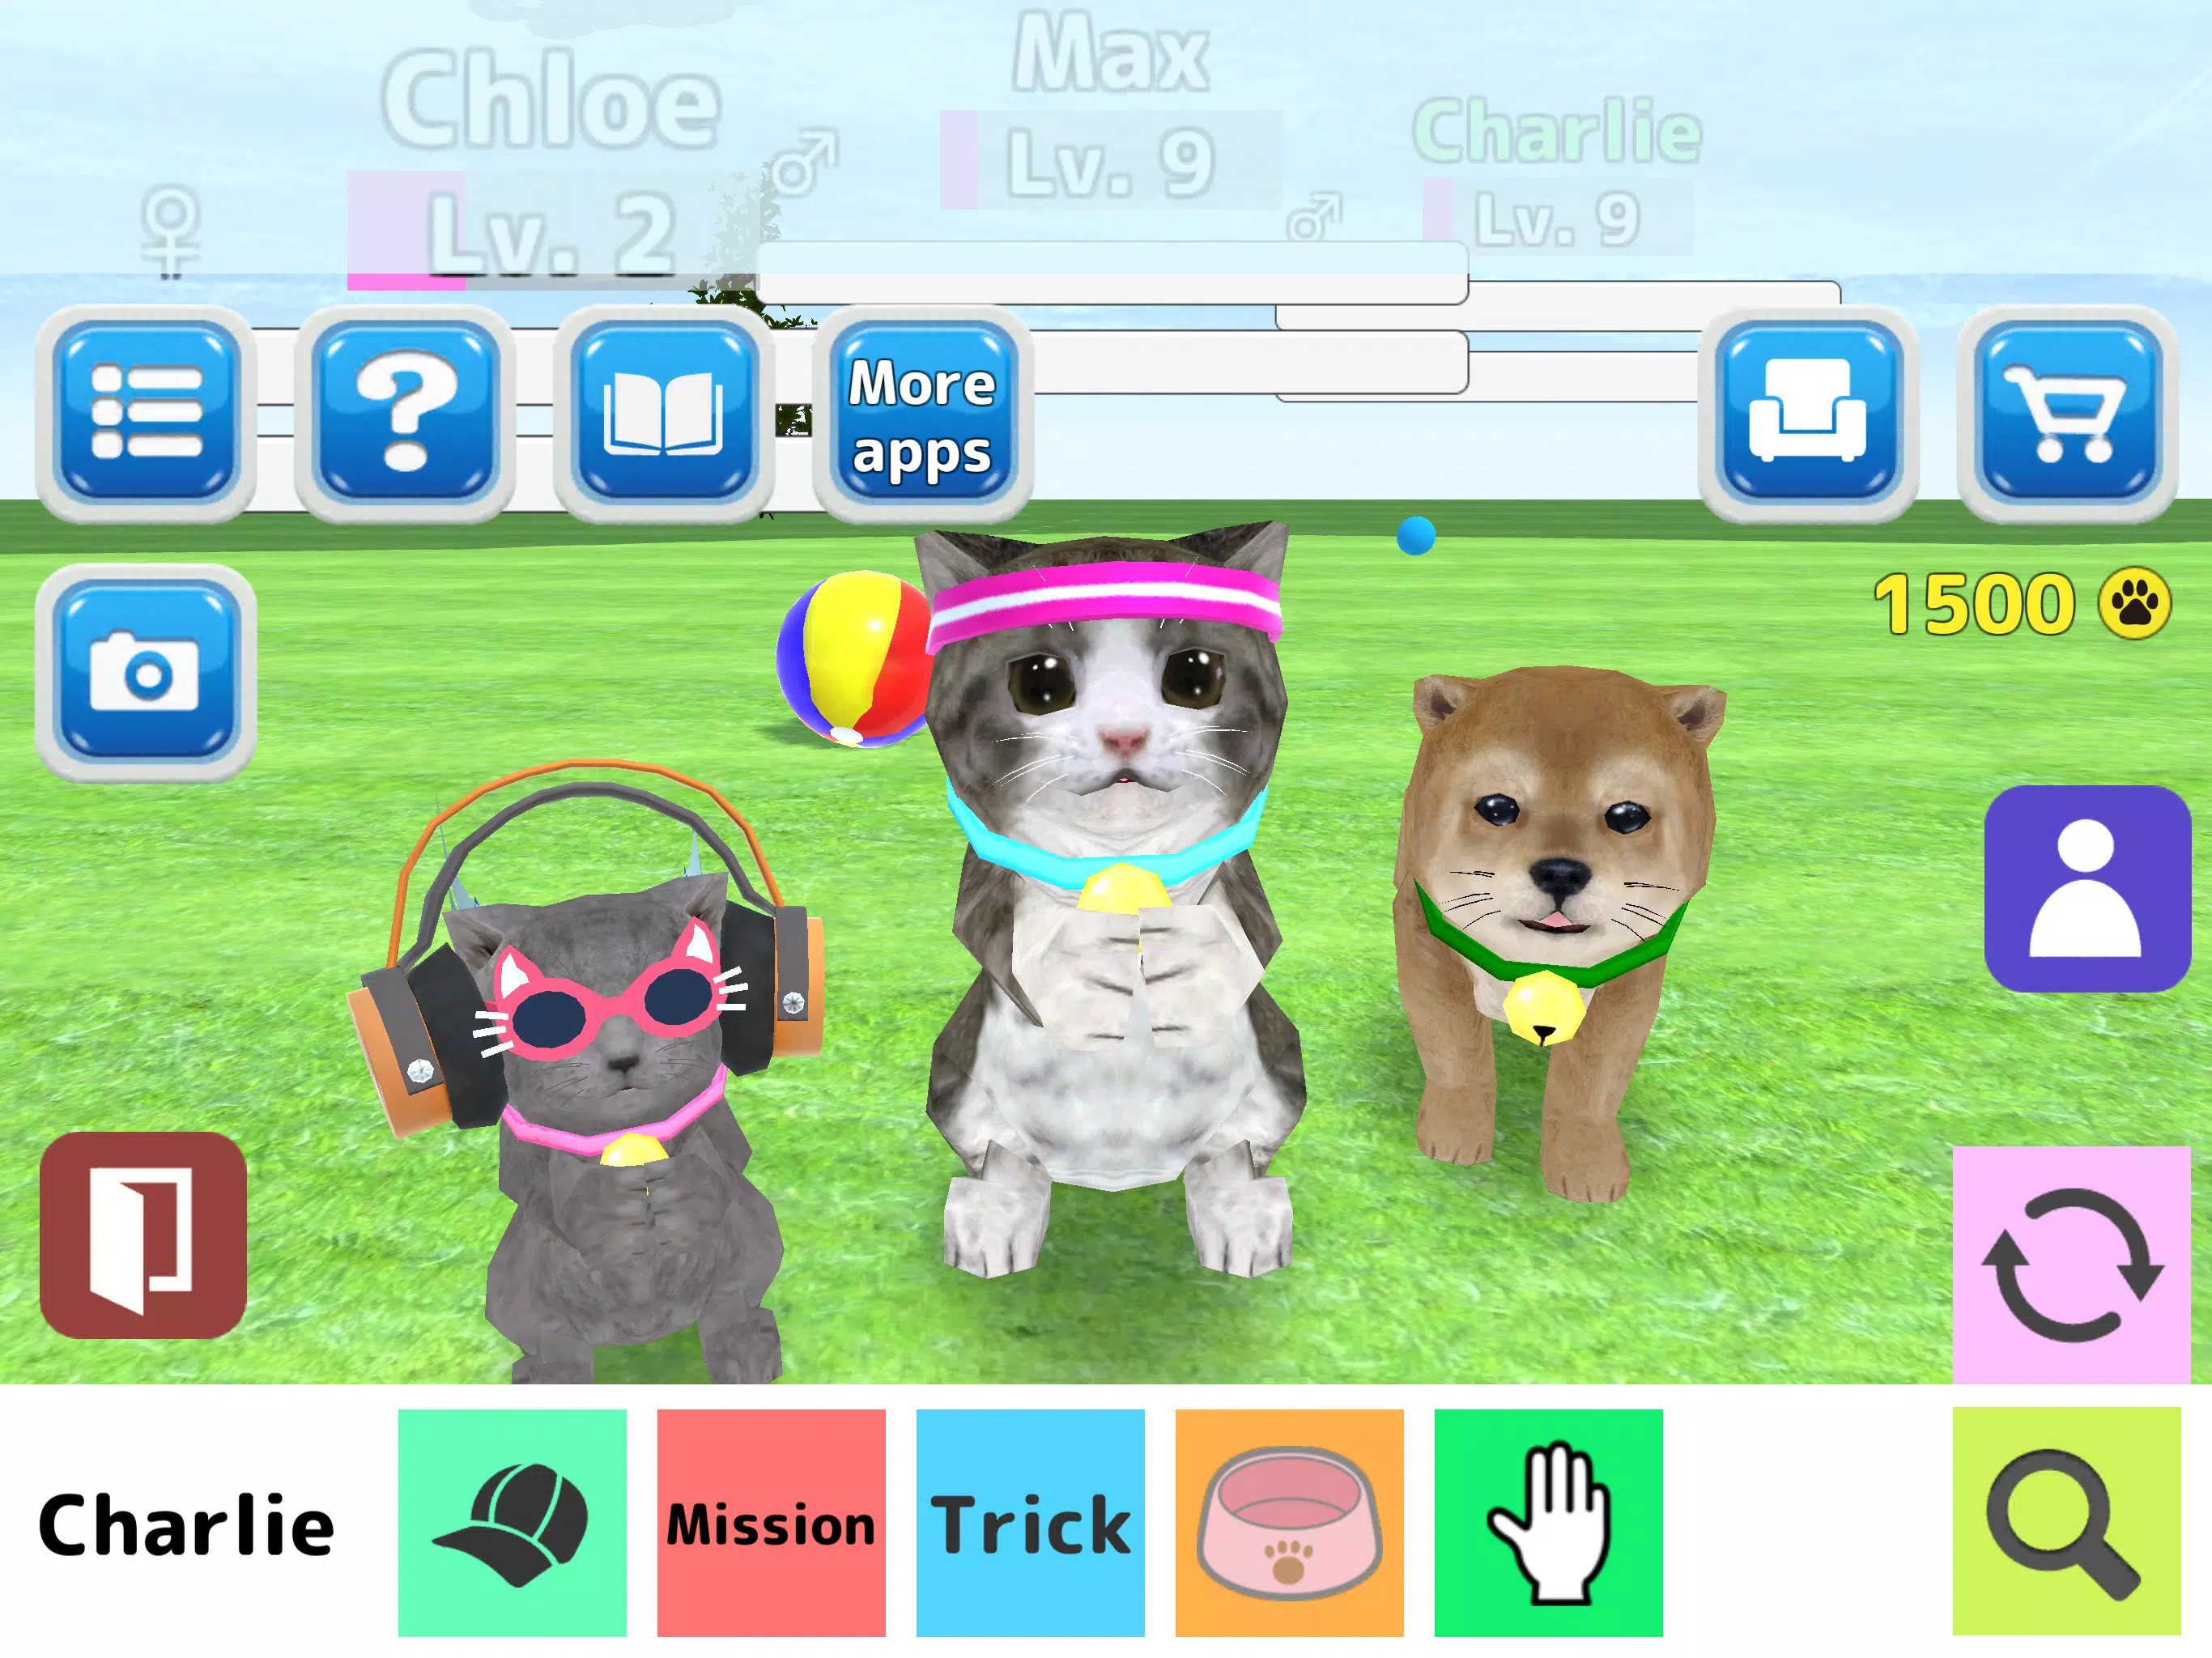 Simulação de Gatos Online – Apps no Google Play